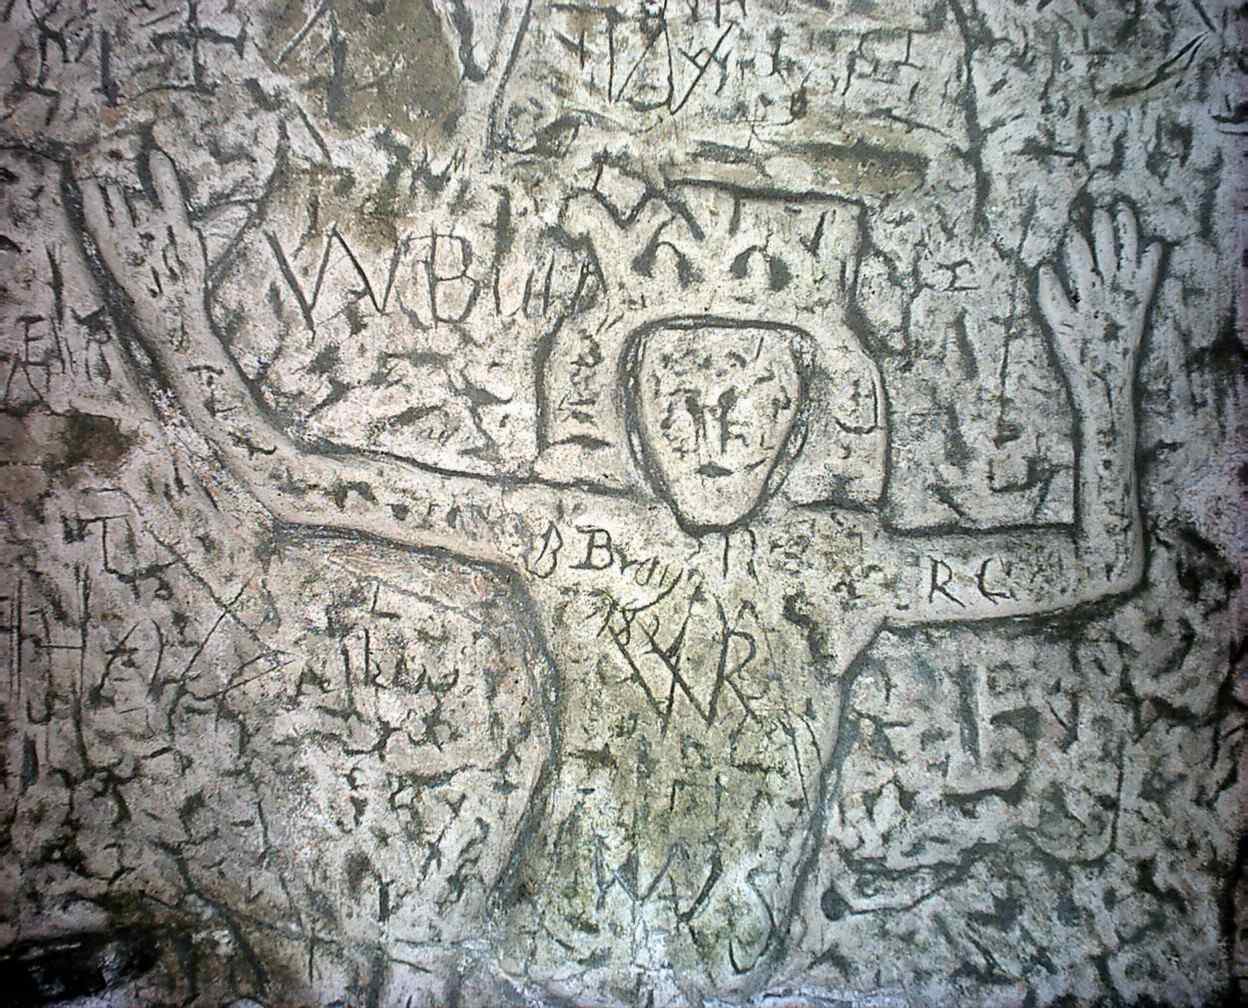 Titokzatos szimbólumok és faragványok az ember alkotta Royston Cave 2-ben